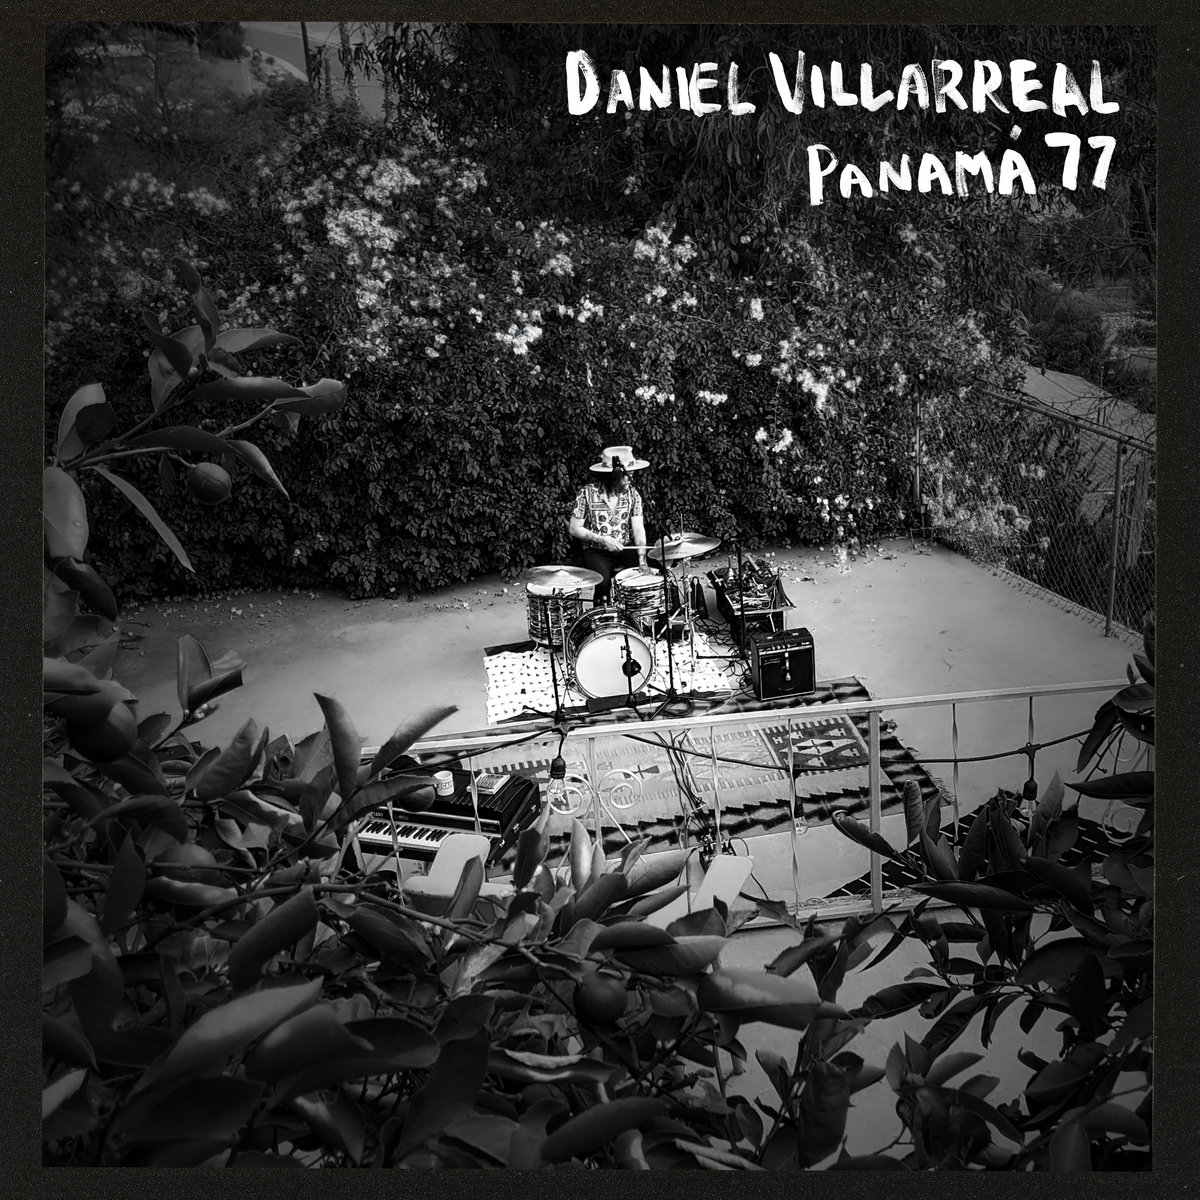 Daniel Villarreal Panama 77